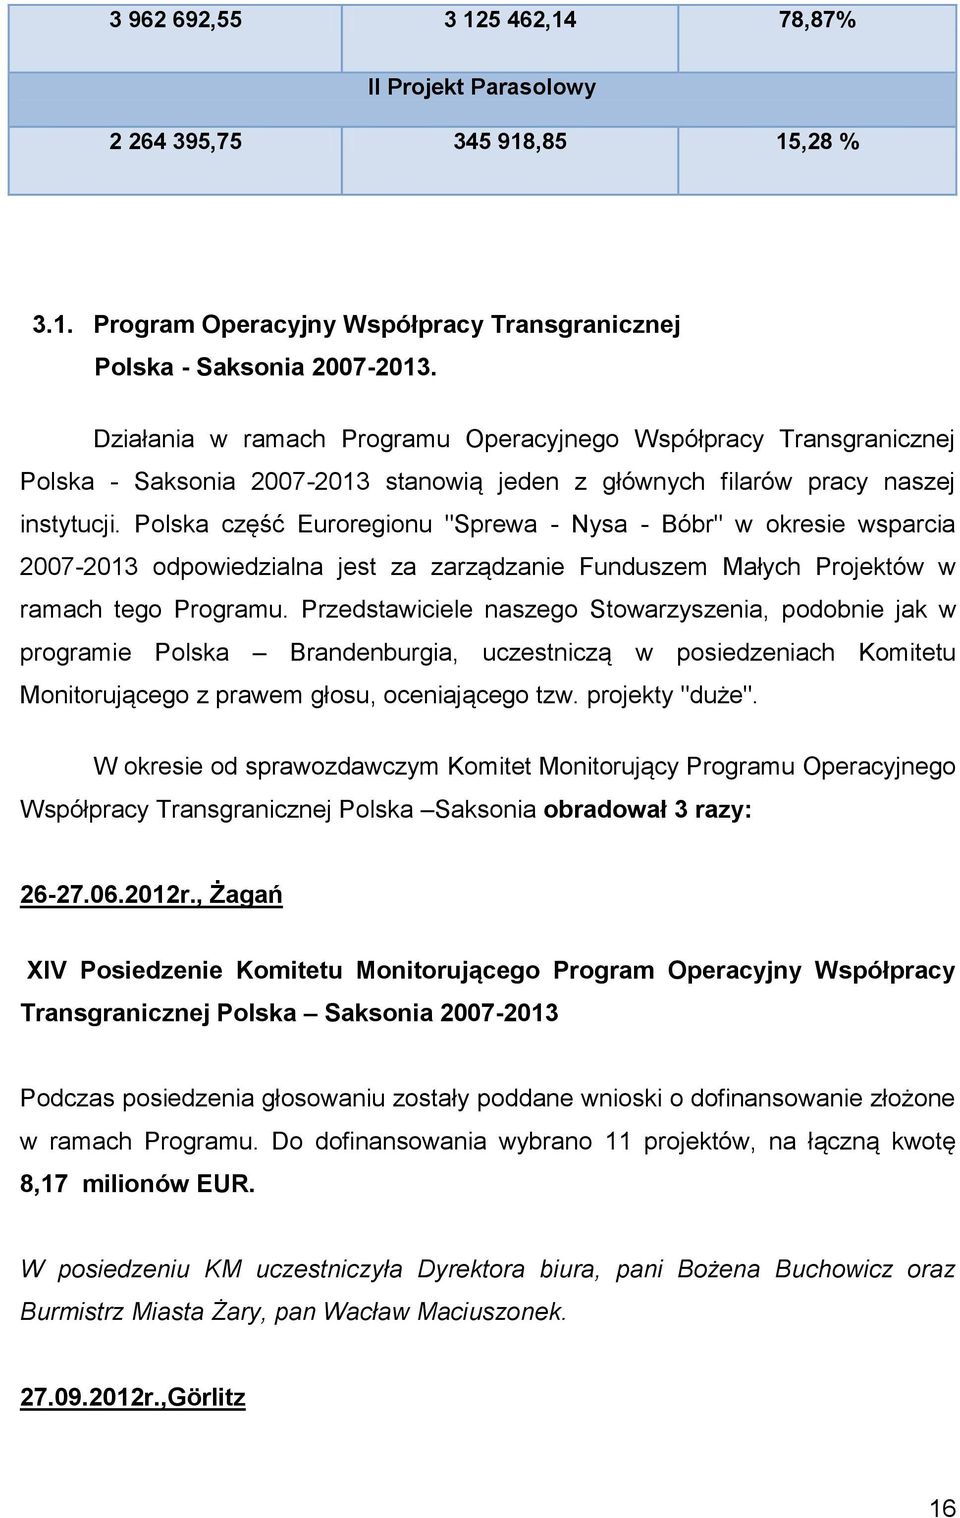 Polska część Euroregionu "Sprewa - Nysa - Bóbr" w okresie wsparcia 2007-2013 odpowiedzialna jest za zarządzanie Funduszem Małych Projektów w ramach tego Programu.